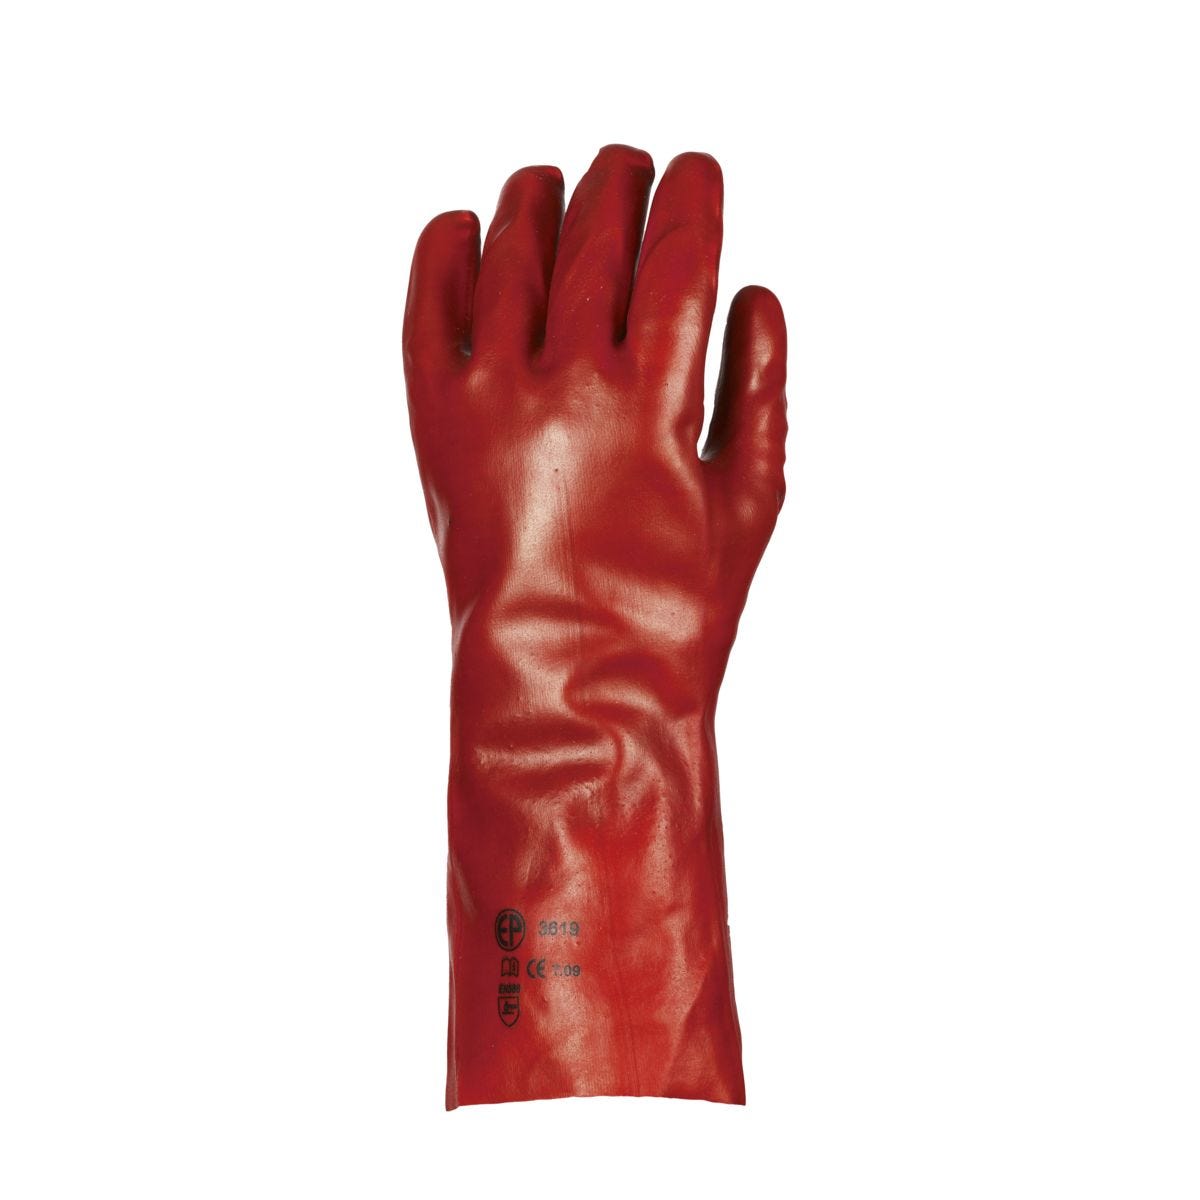 Gants PVC rouge enduit, standard, 35 cm - COVERGUARD - Taille XL-10 0